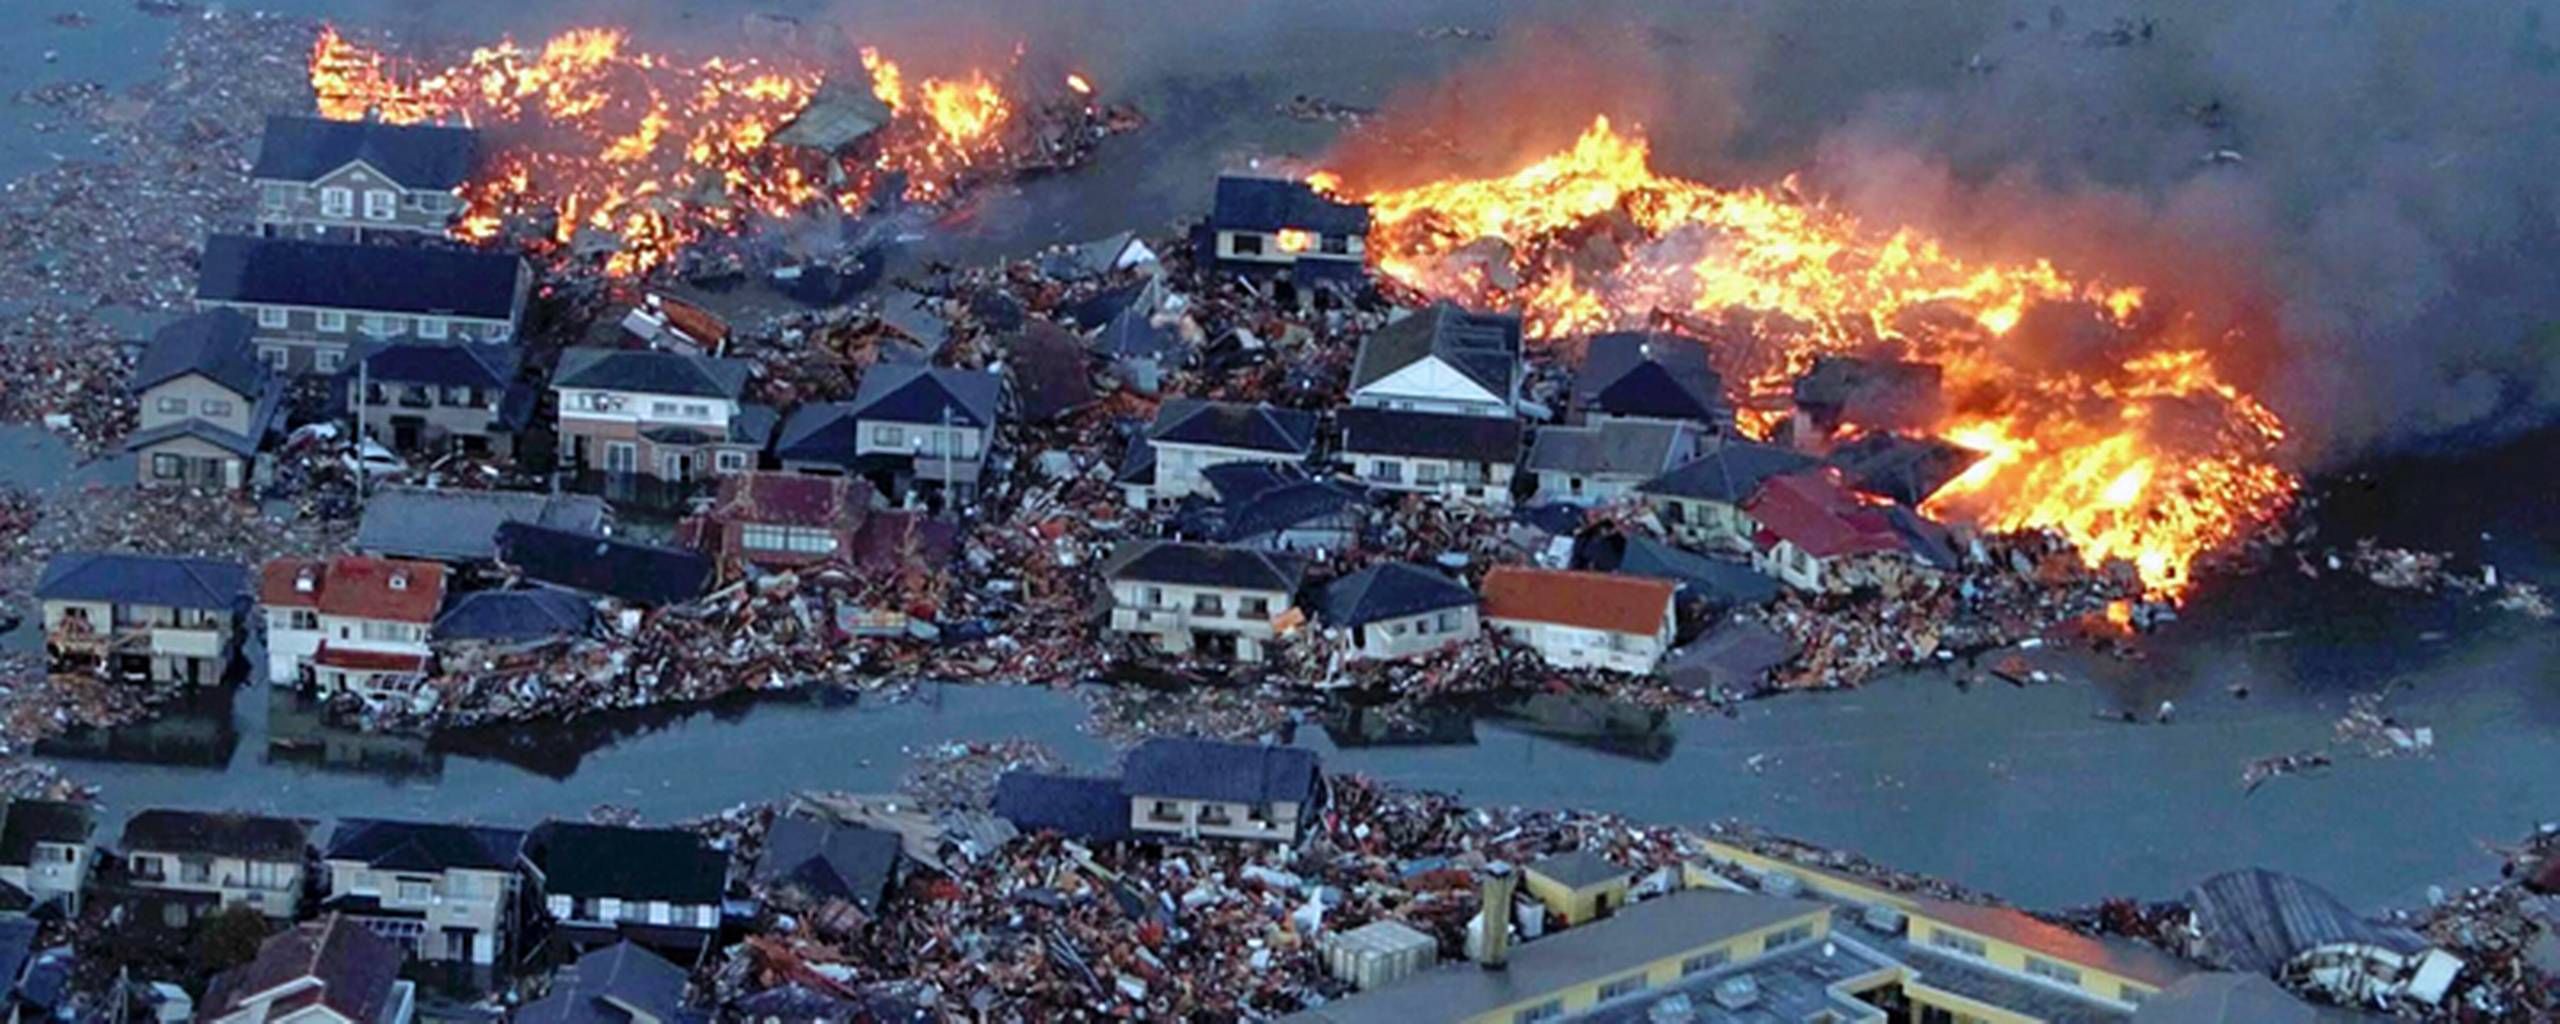 Intrusion Forebyggelse mens Tsunami på 85 meter kan ramme Norge